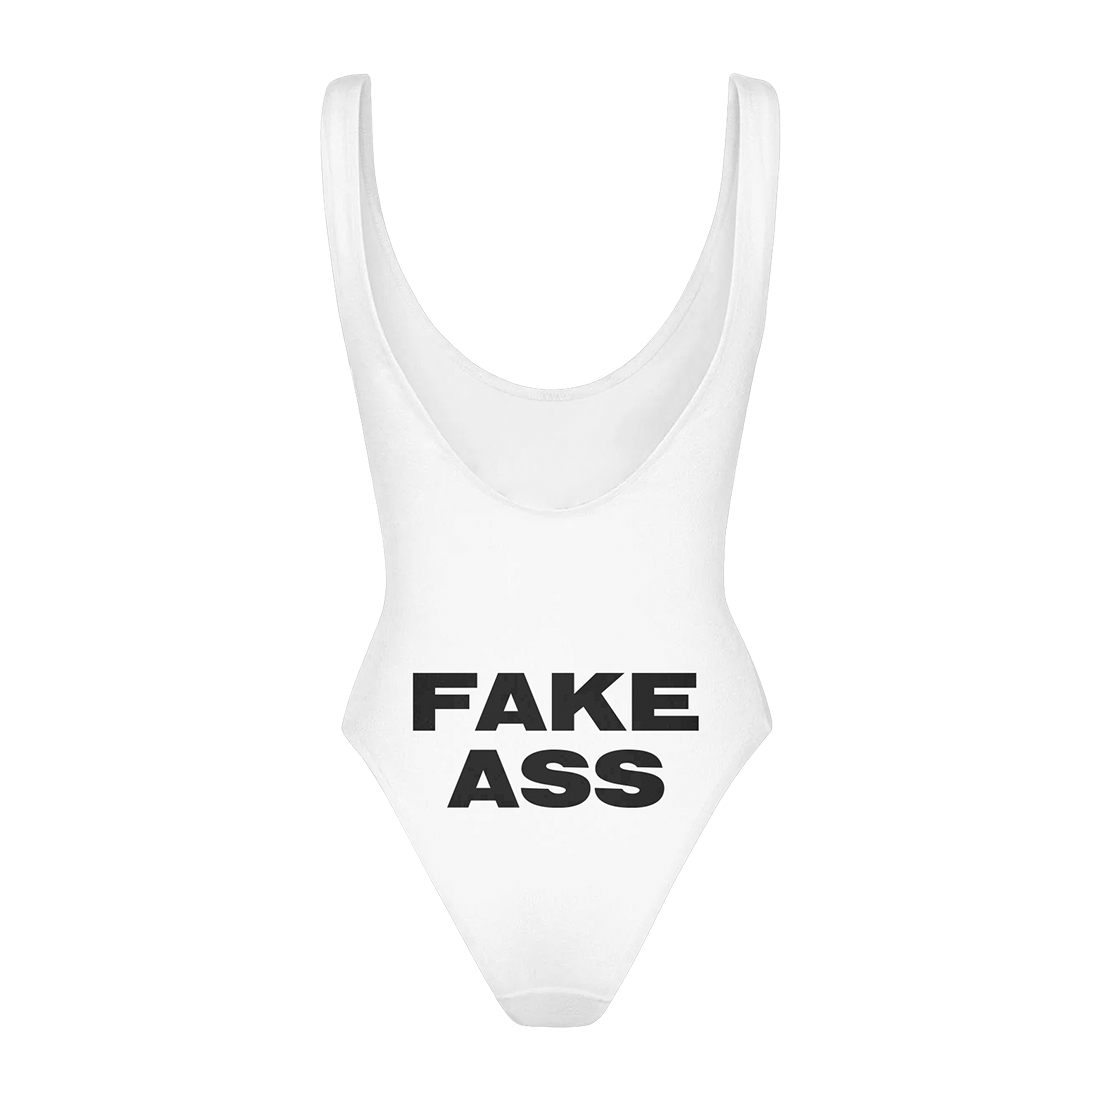 Fake Boobs/Ass White Bodysuit